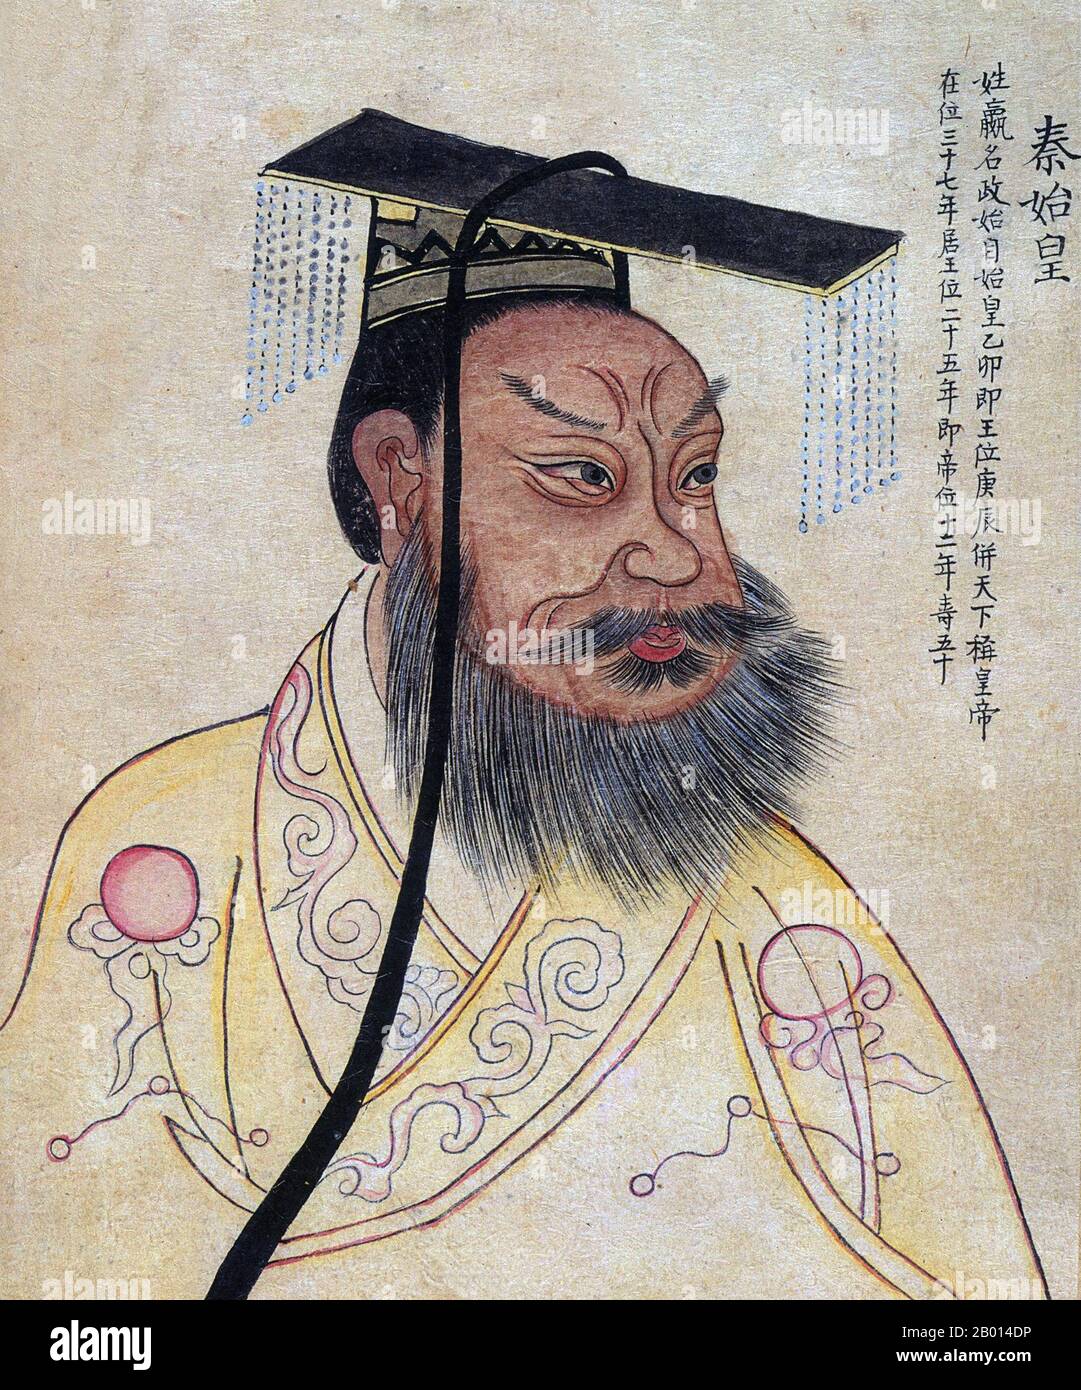 Chine : Qin Shi Huang/Qin Shi Huangdi (259-210 BCE), premier empereur d'une  Chine unifiée (r.246-221 BCE). Illustration de la feuille d'album, 19e  siècle. Qin Shi Huang, nom personnel Ying Zheng, a été